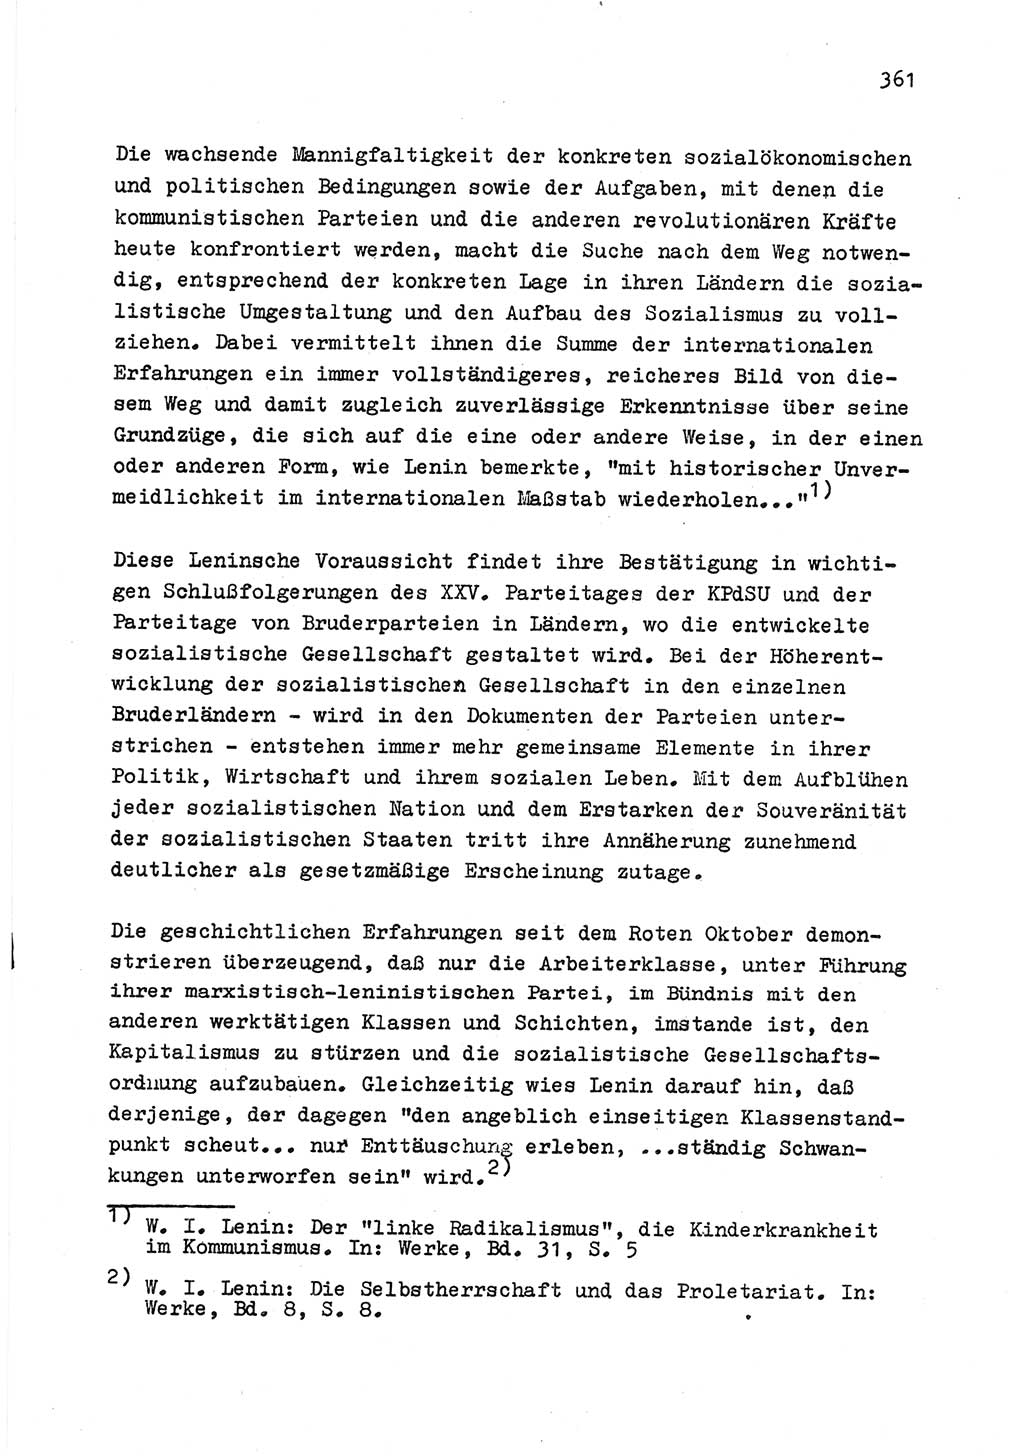 Zu Fragen der Parteiarbeit [Sozialistische Einheitspartei Deutschlands (SED) Deutsche Demokratische Republik (DDR)] 1979, Seite 361 (Fr. PA SED DDR 1979, S. 361)